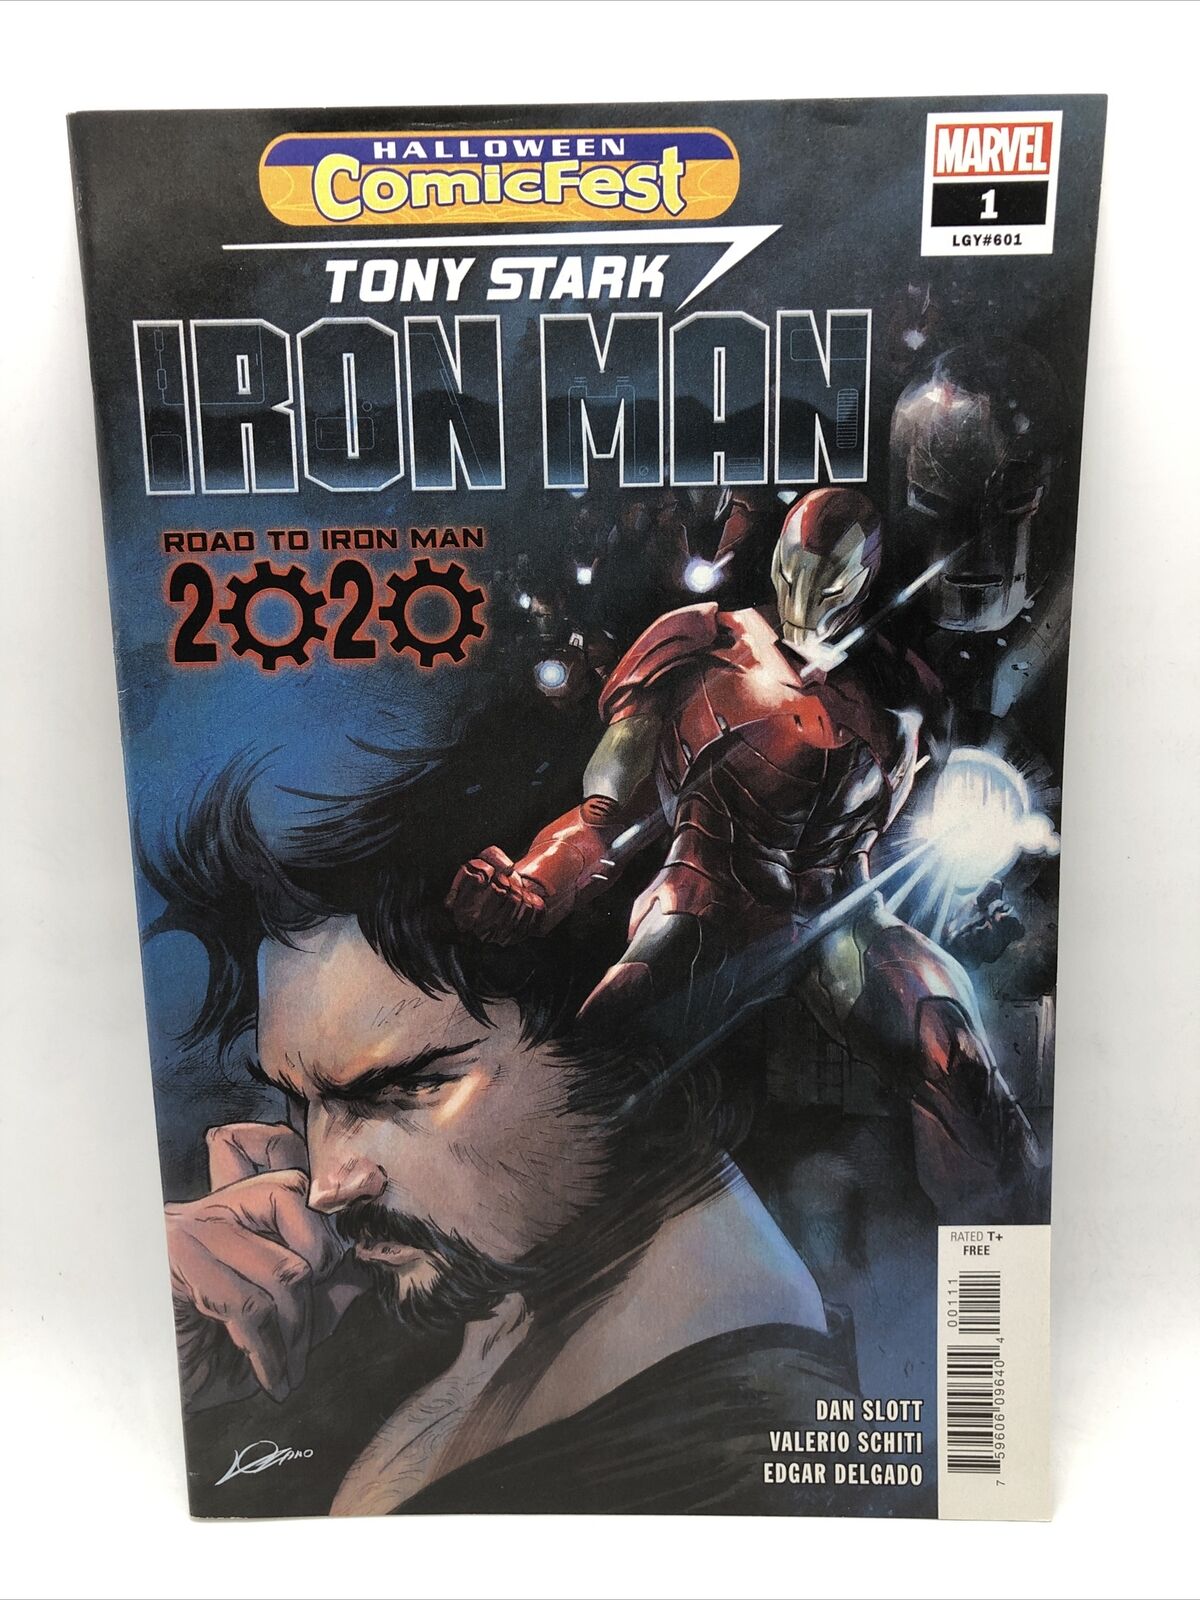 HCF Halloween Comicfest Tony Stark: Iron Man #1 Road to Iron Man 2020